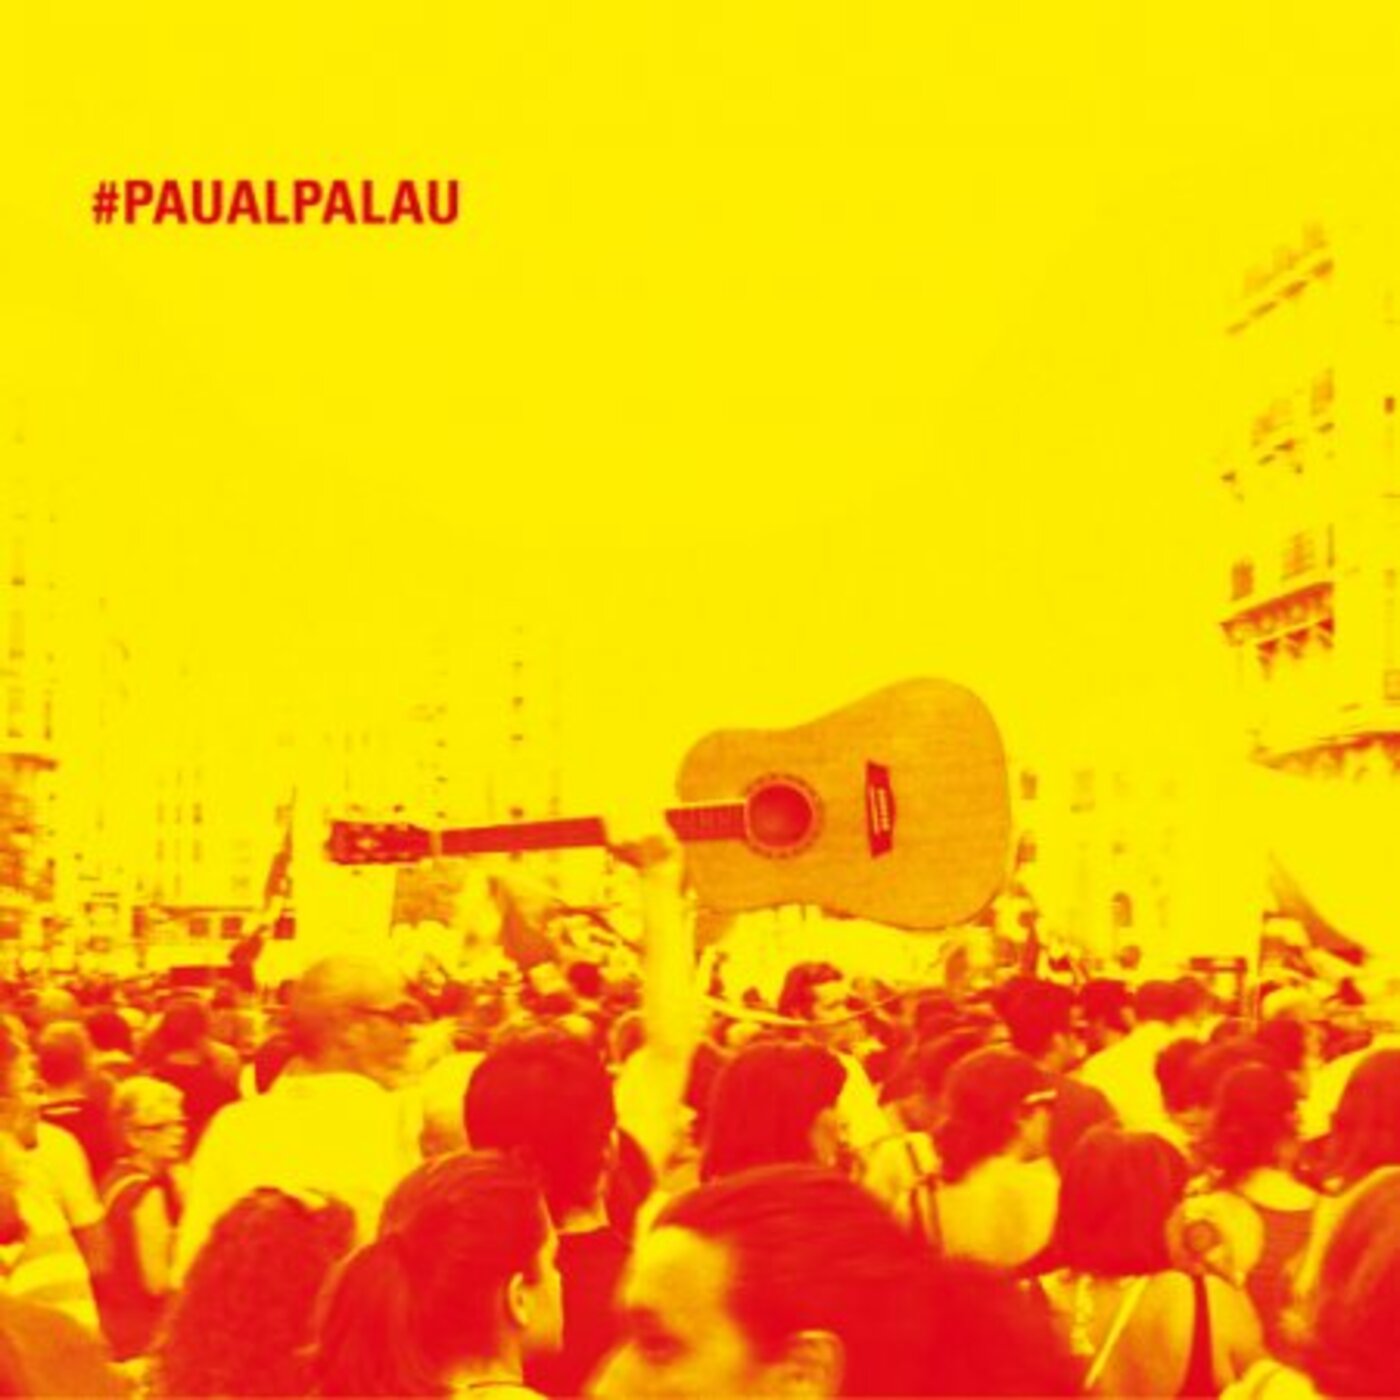 Pau Alabajos - #PAUALPALAU  | musica en valencià